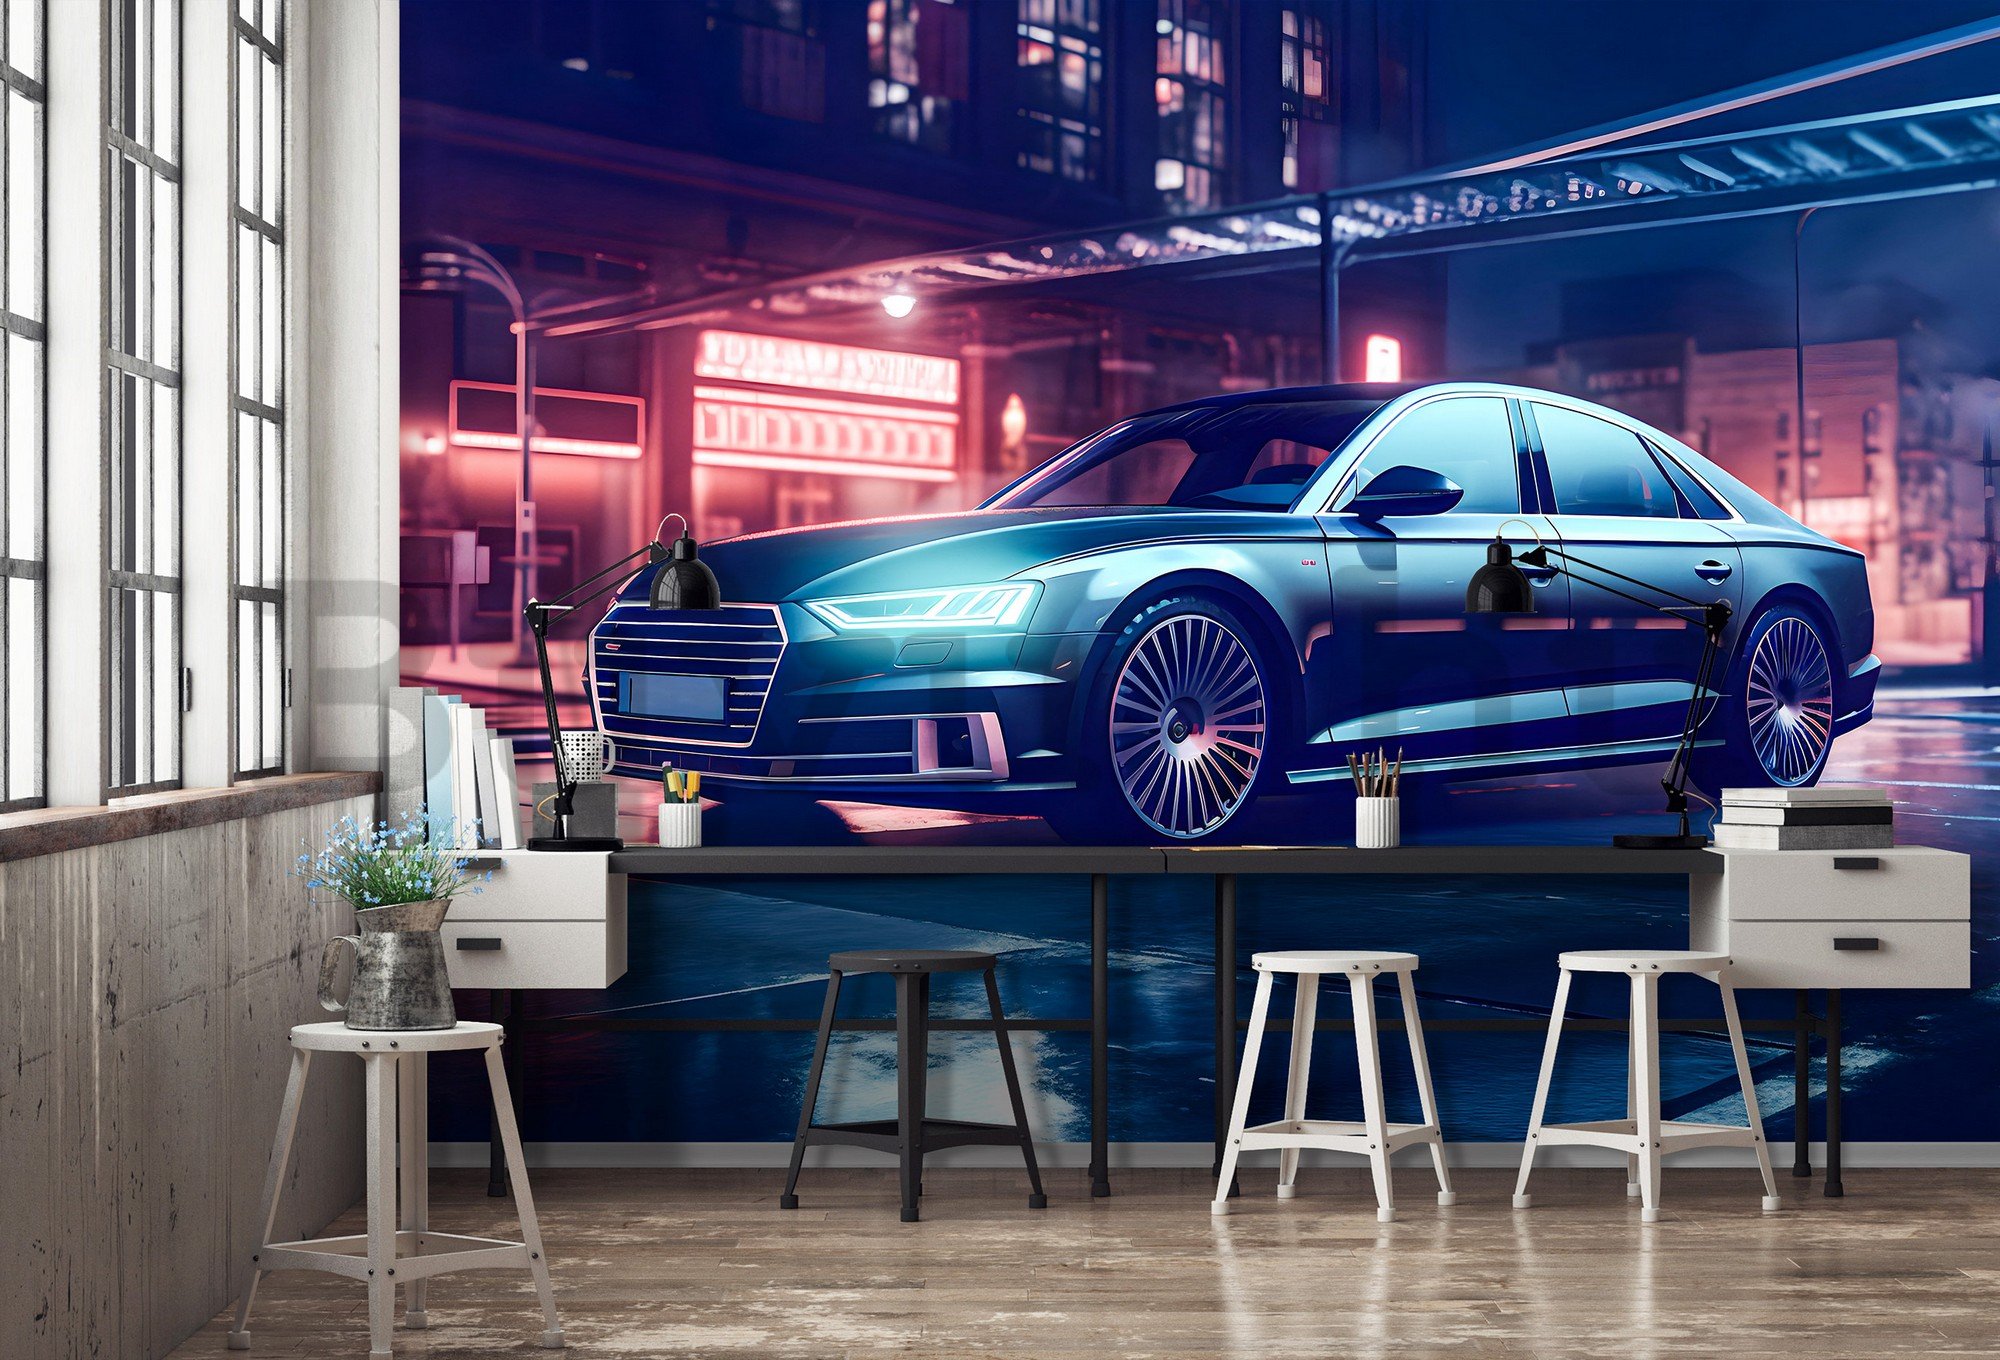 Vlies fotótapéta: Car Audi city neon - 254x184 cm